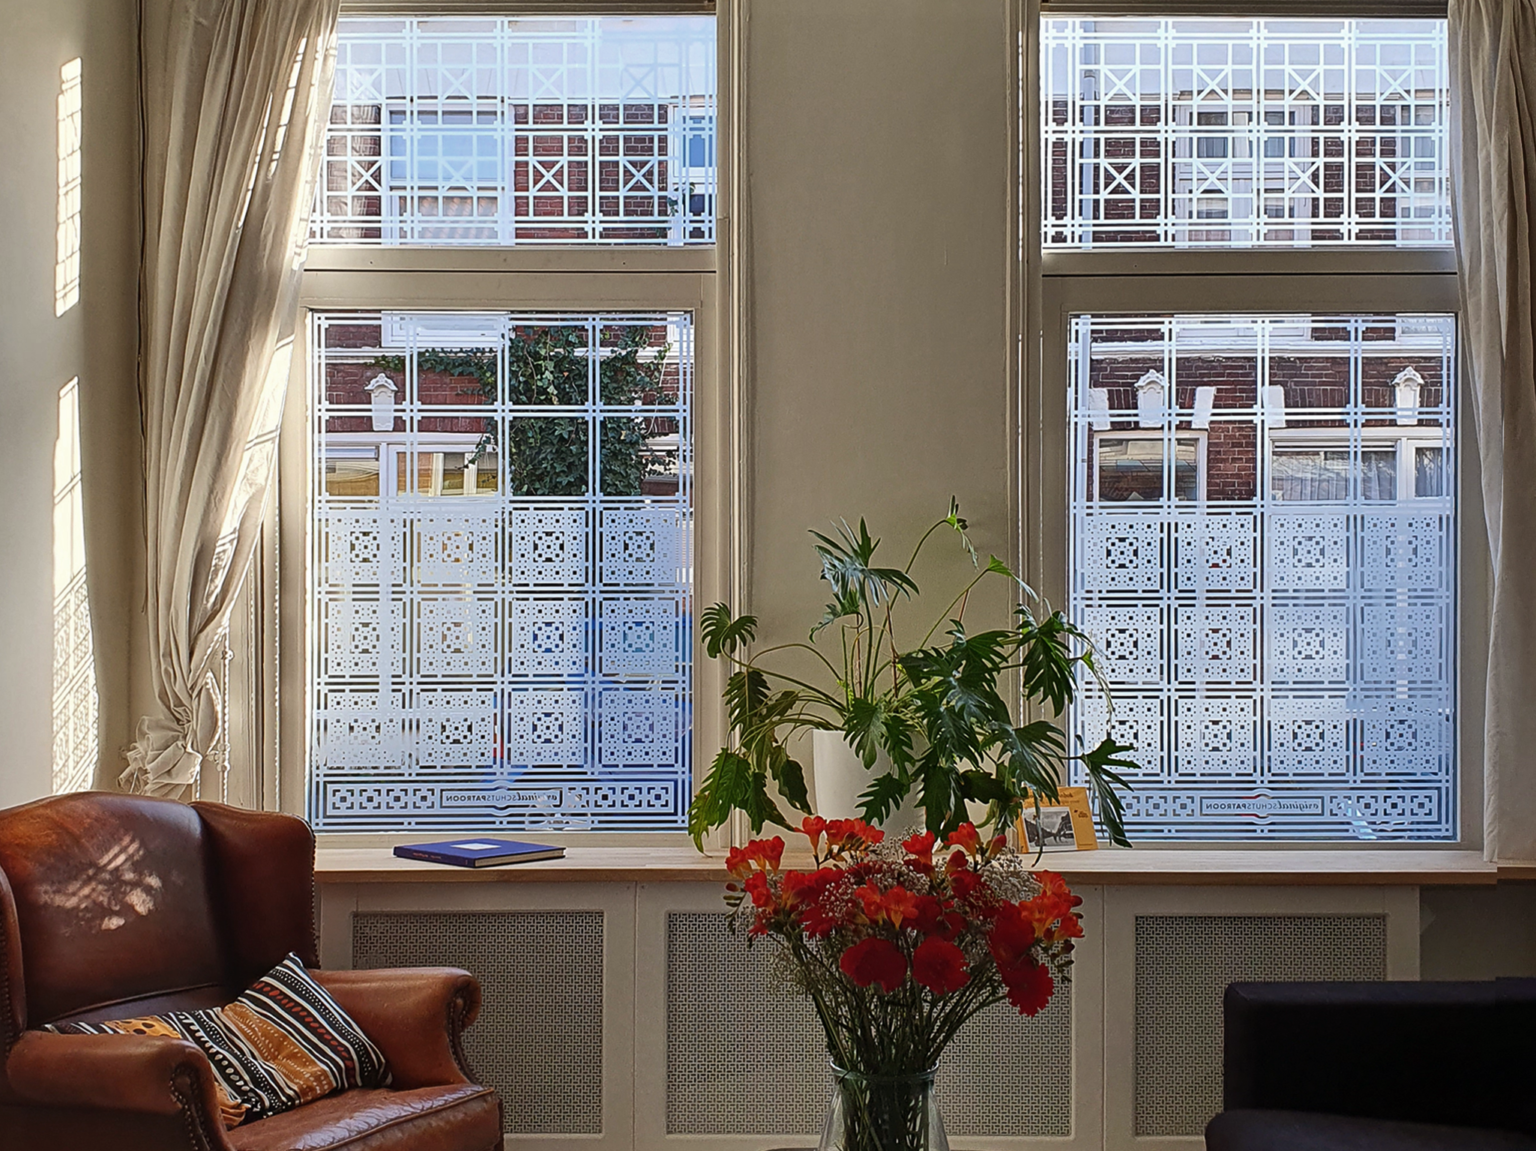 op maat ontworpen raamfolie patroon / schutspatroon voor woonkamer van binnen gezien 2